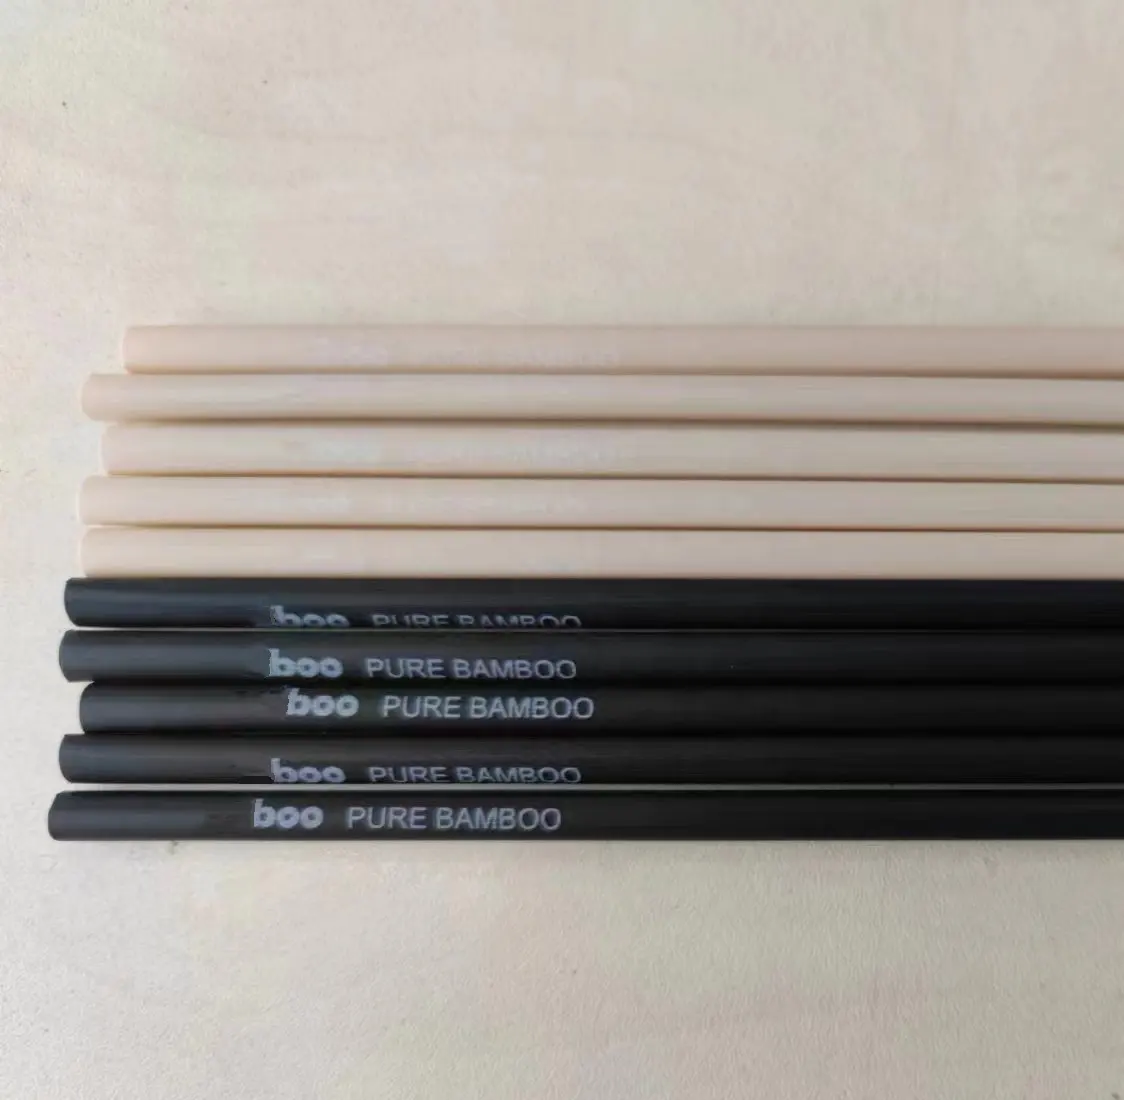 Palhas Fibra de bambu preto com logotipo palhas descartáveis-Eco-friendly biodegradáveis moda de uso único bebendo palhas